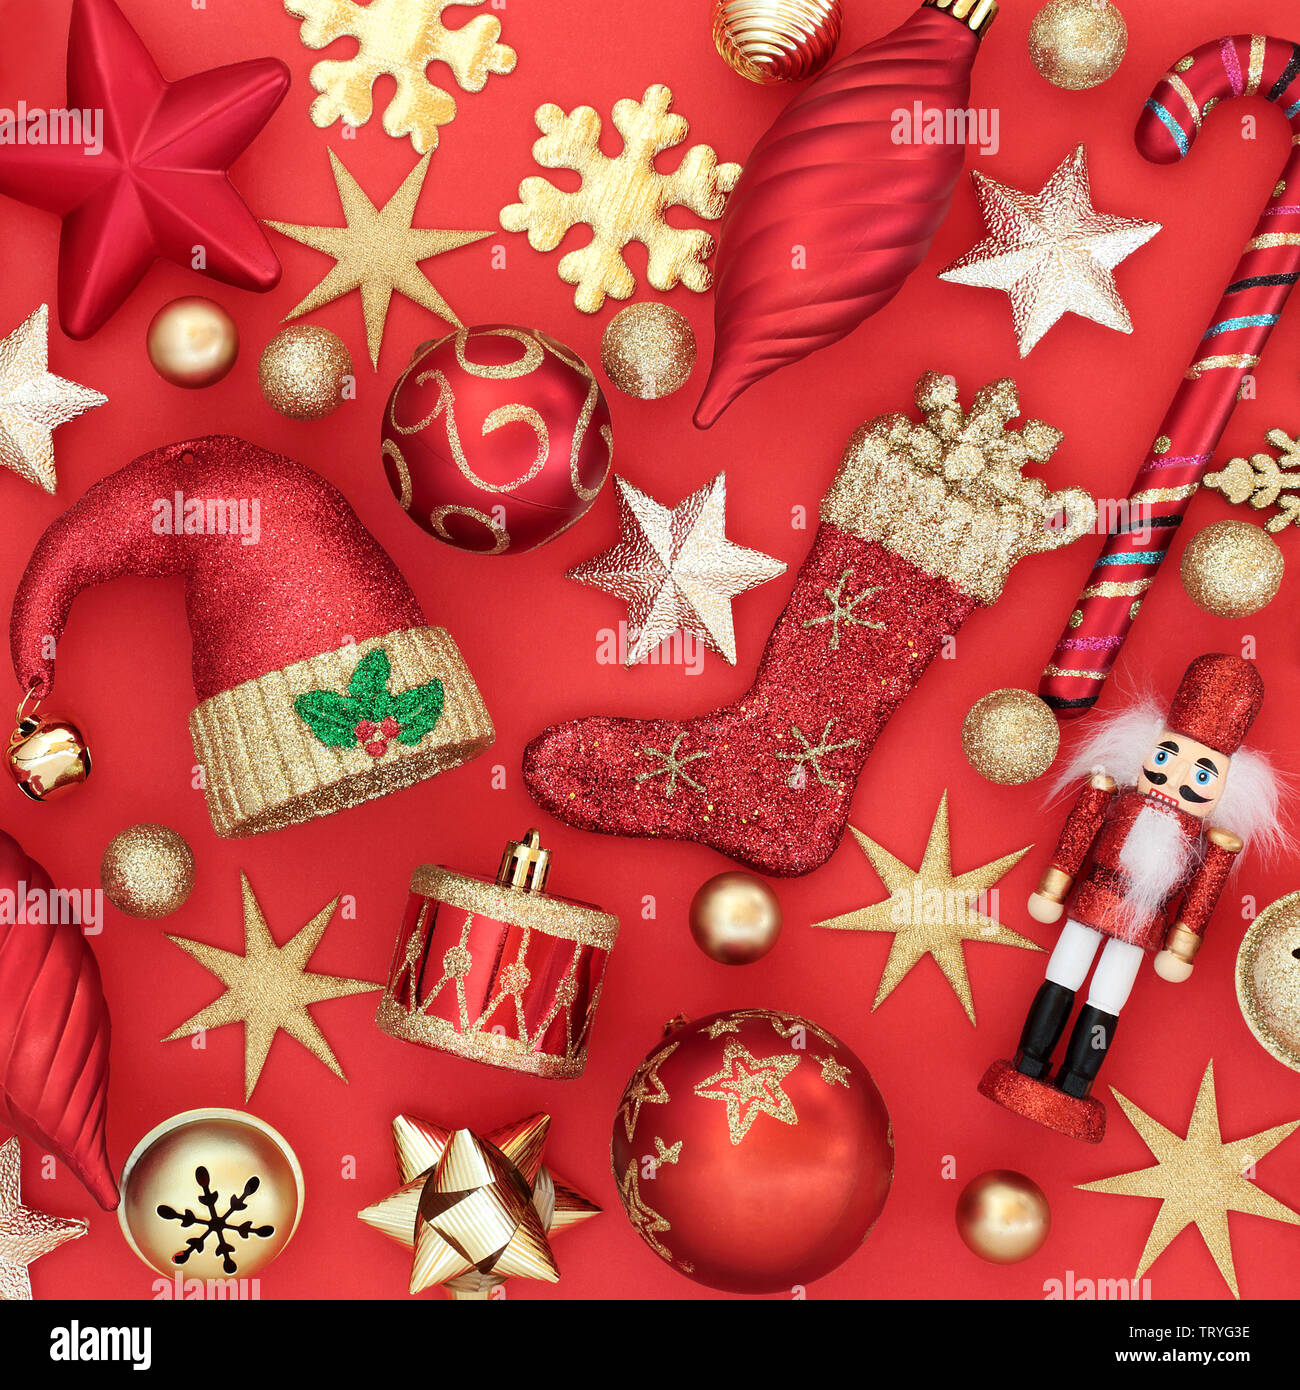 Décorations de Noël et des symboles sur fond rouge. Carte de vœux traditionnels pour les fêtes. Banque D'Images